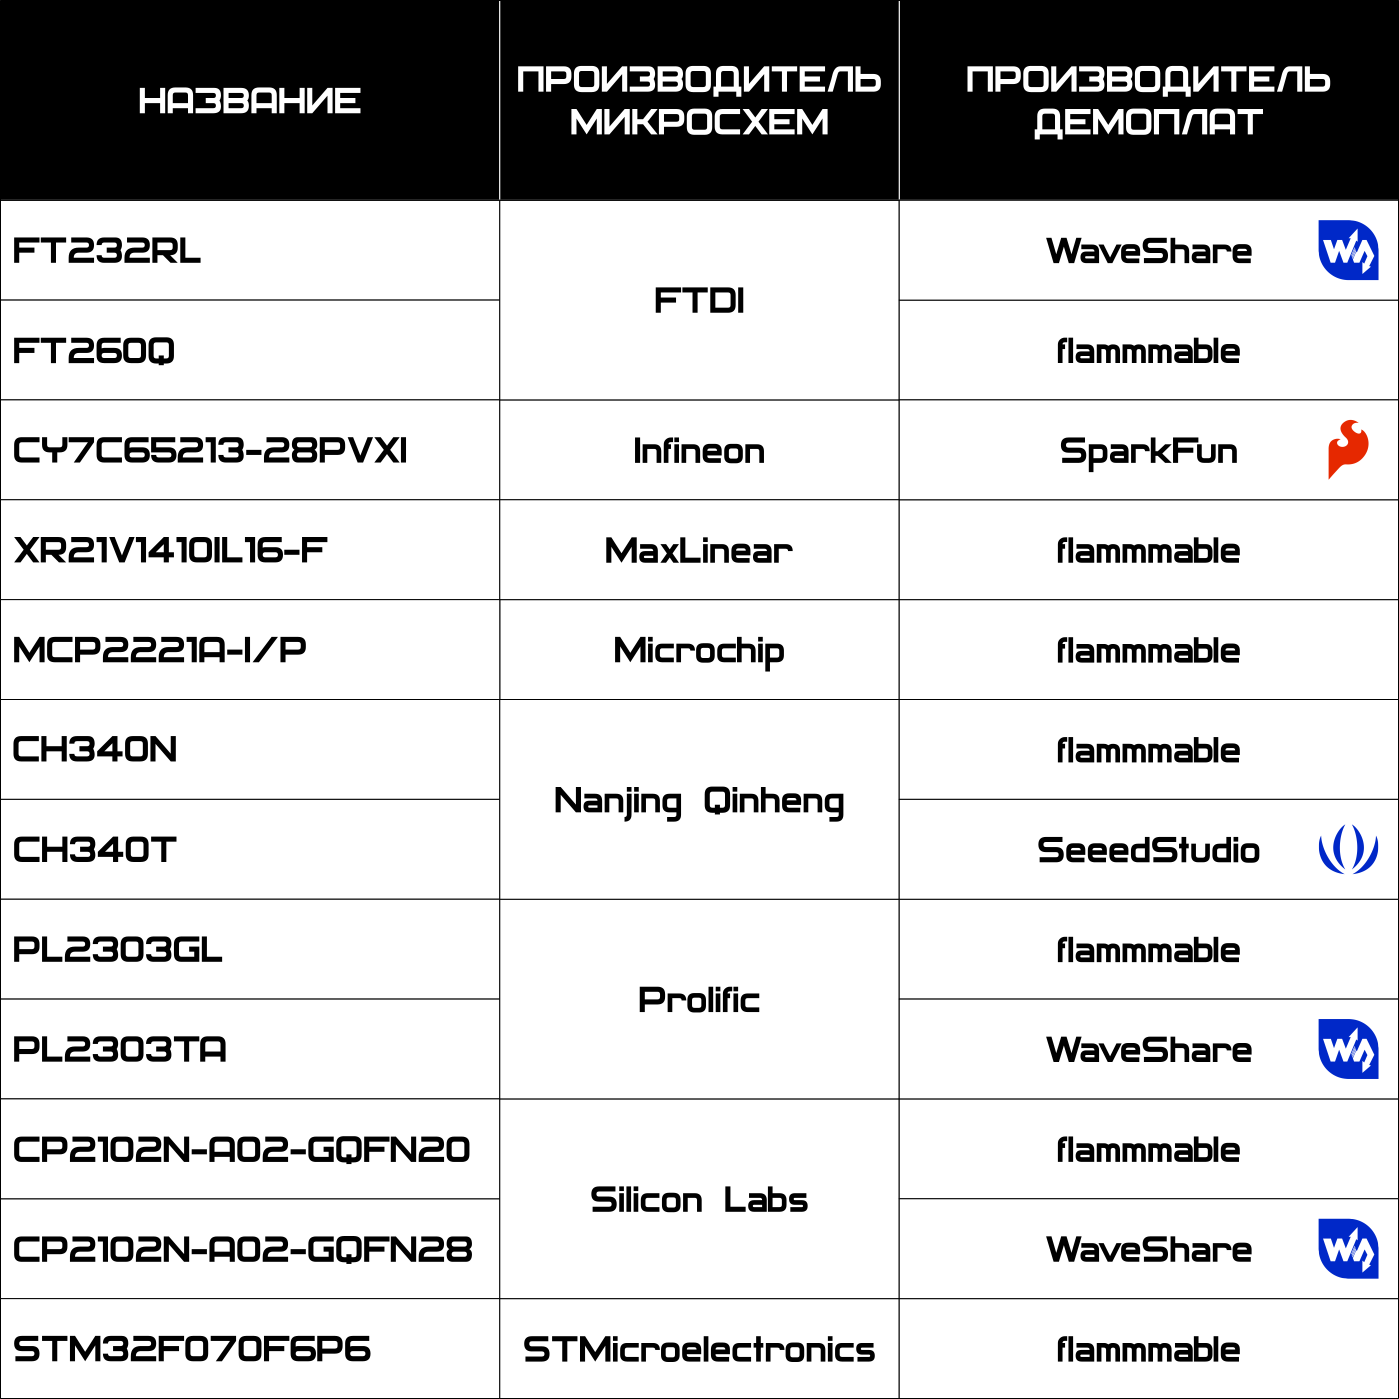 Список демоплат с мостами USB-UART, рассматриваемых в статье